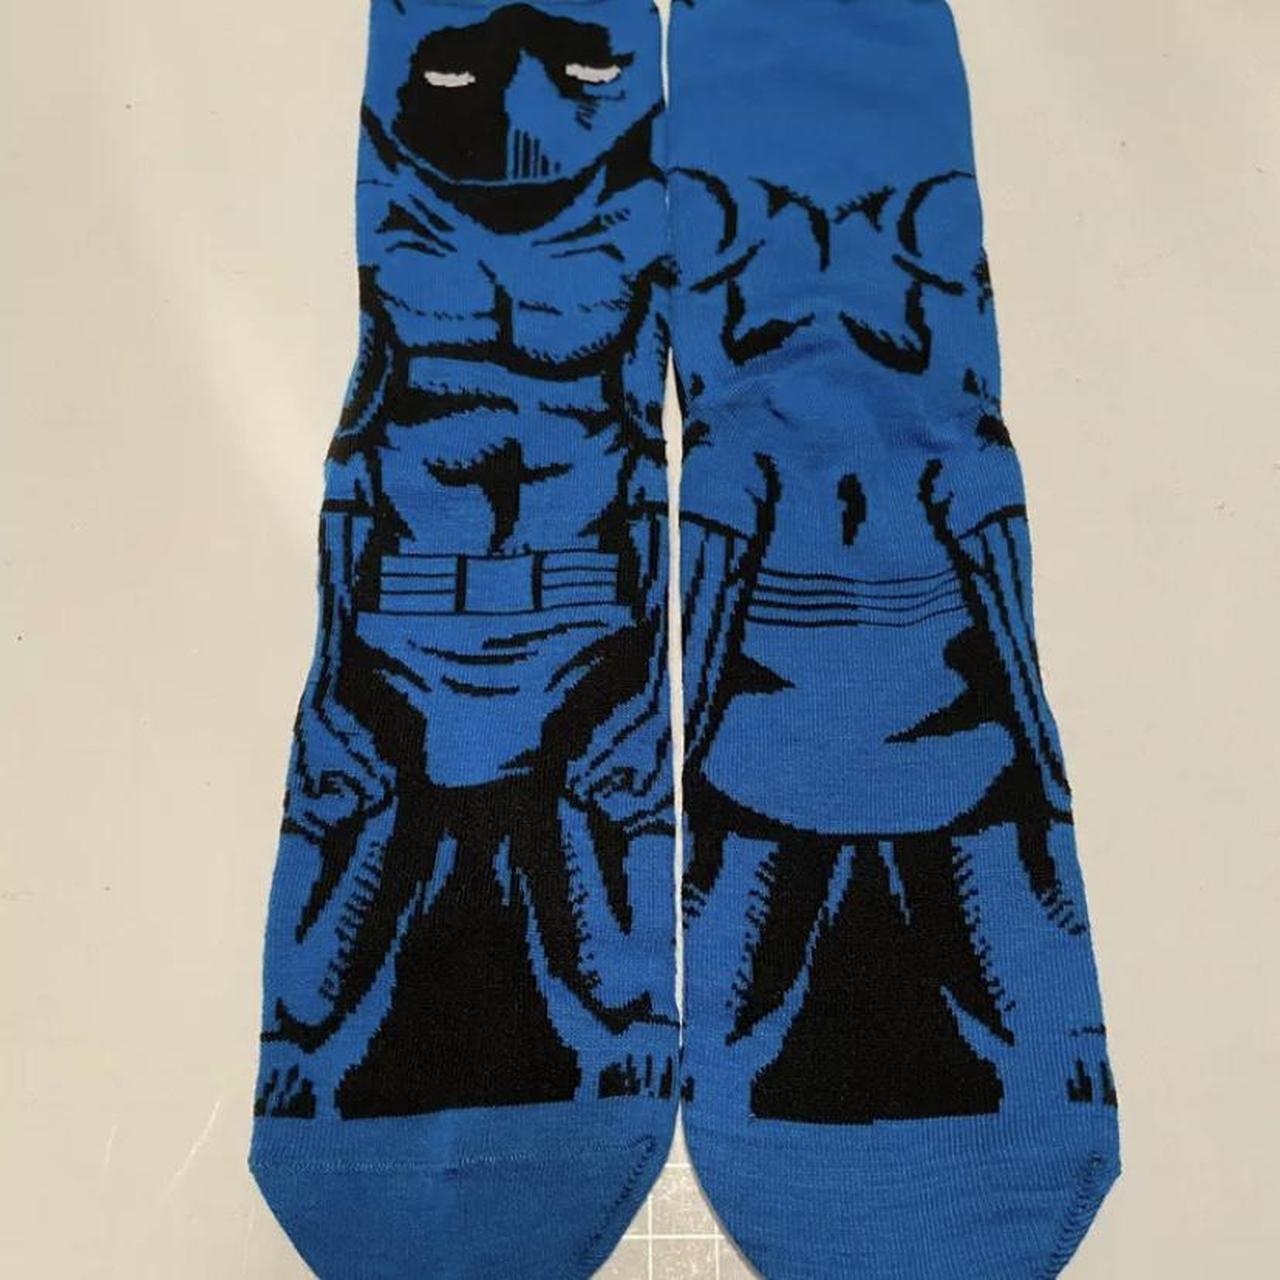 Men's Blue and Black Socks | Depop